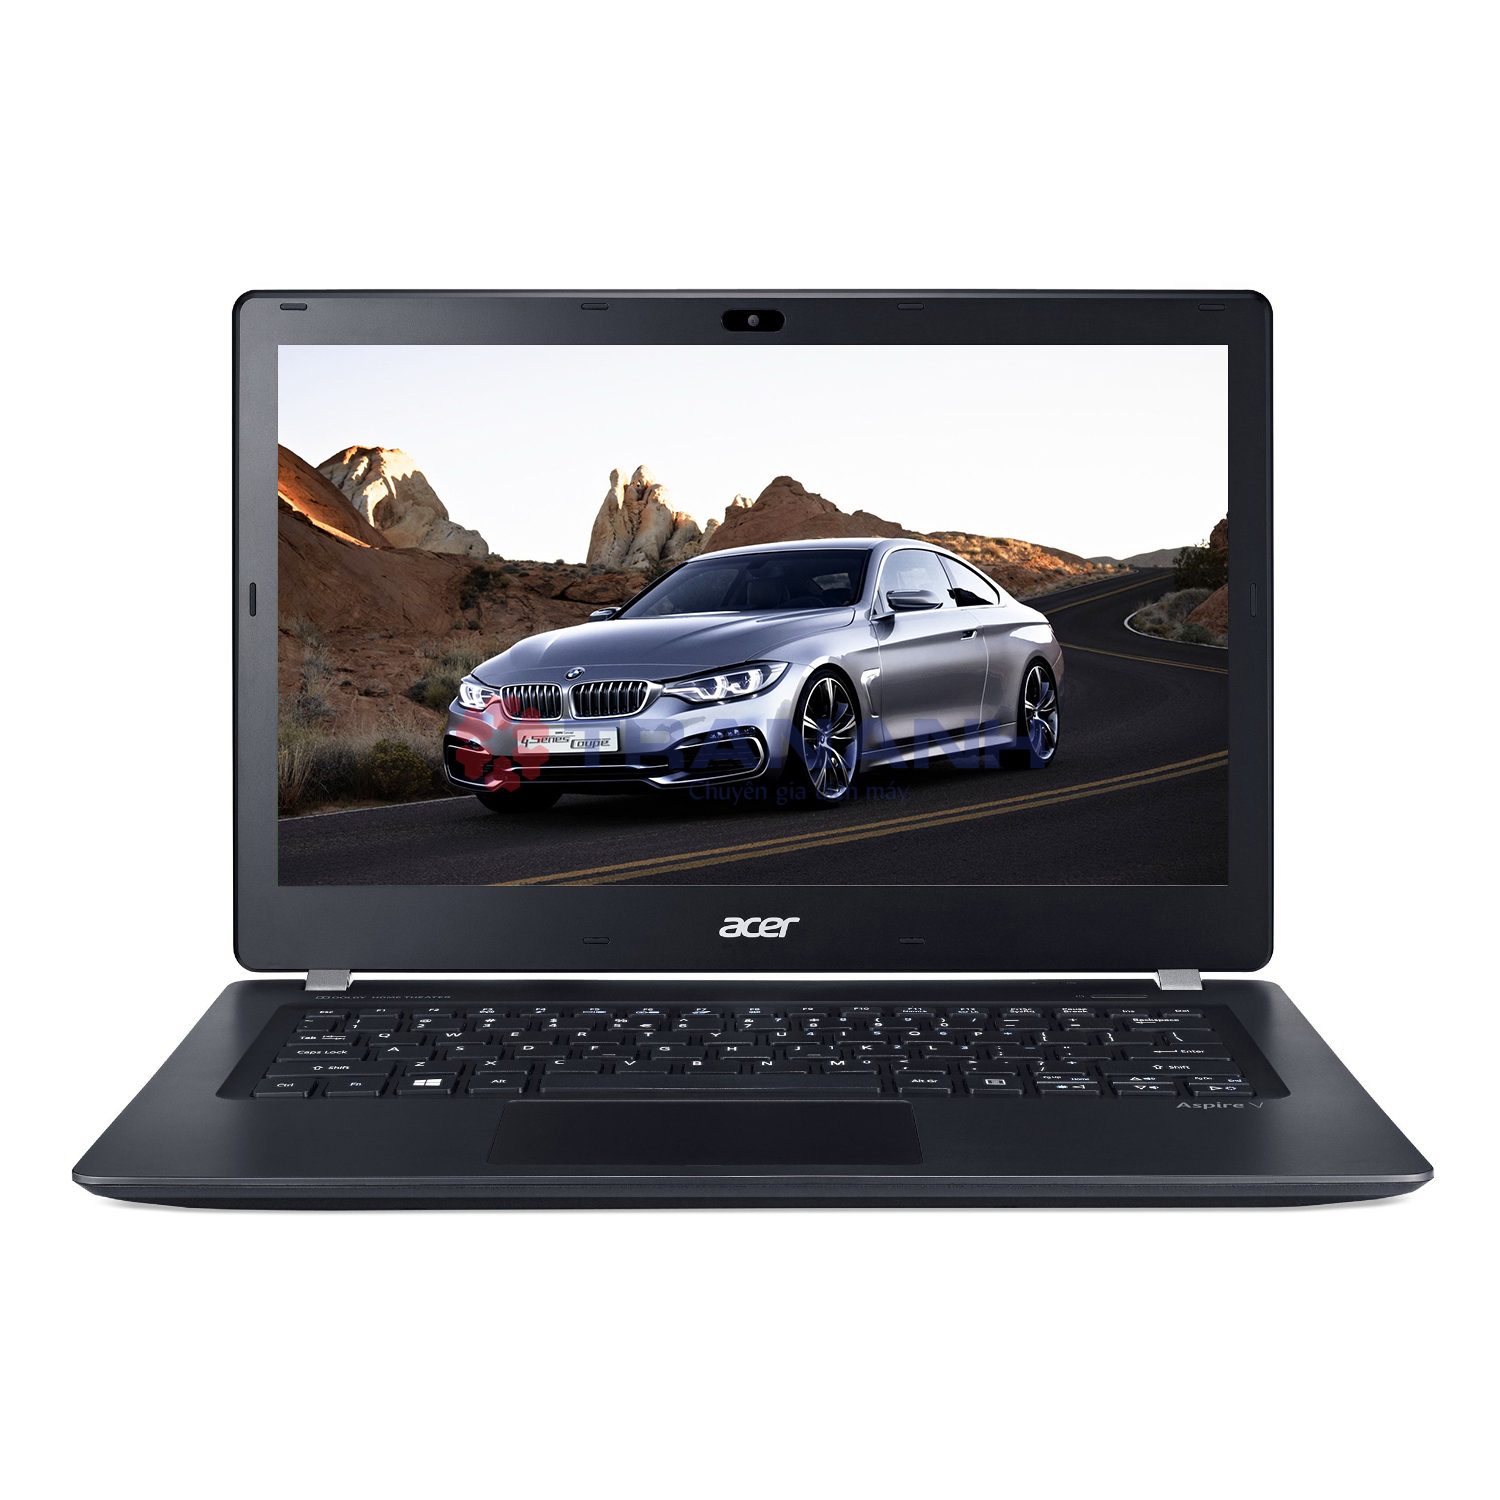 Laptop Acer Aspire V3-371-50XG - Intel Core i5-5200U 2.2GHz, 4GB RAM, 500GB HDD, Intel HD Graphics 5500, 13.3 Inch